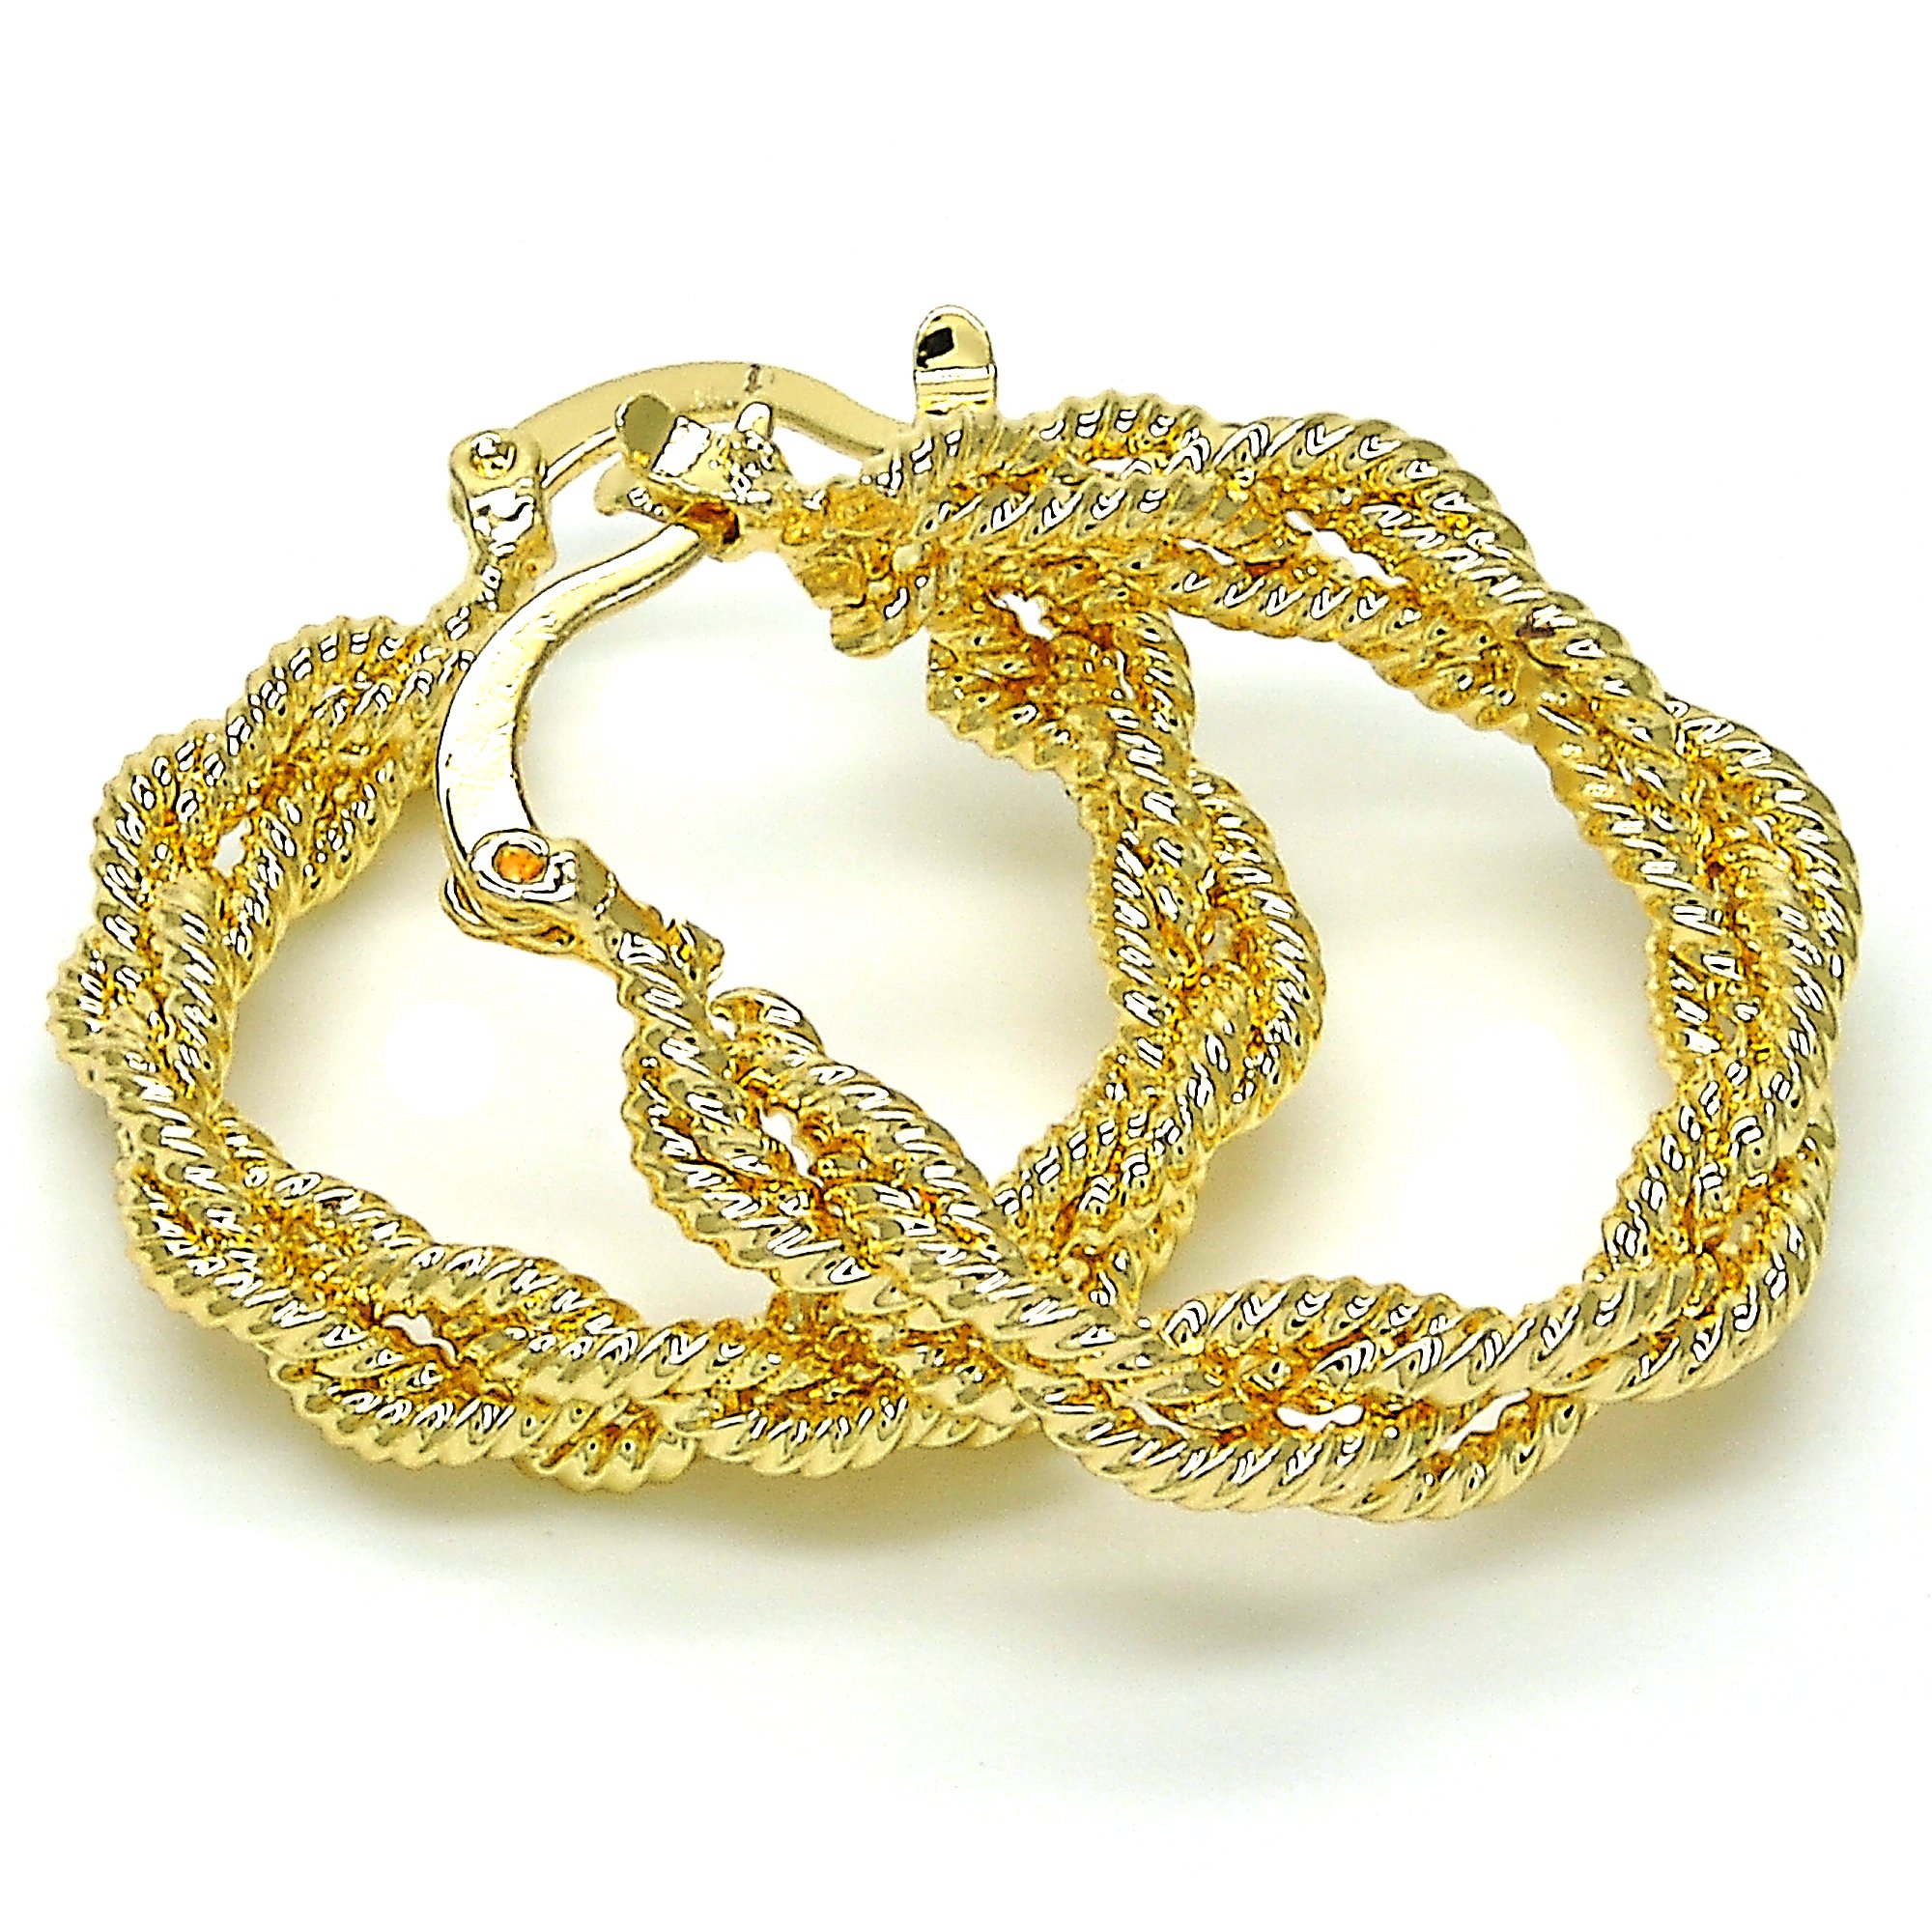 18k Gold Filled High Polish Finsh Medium Hoop, Twist Design, Polished Finish, Golden Tone